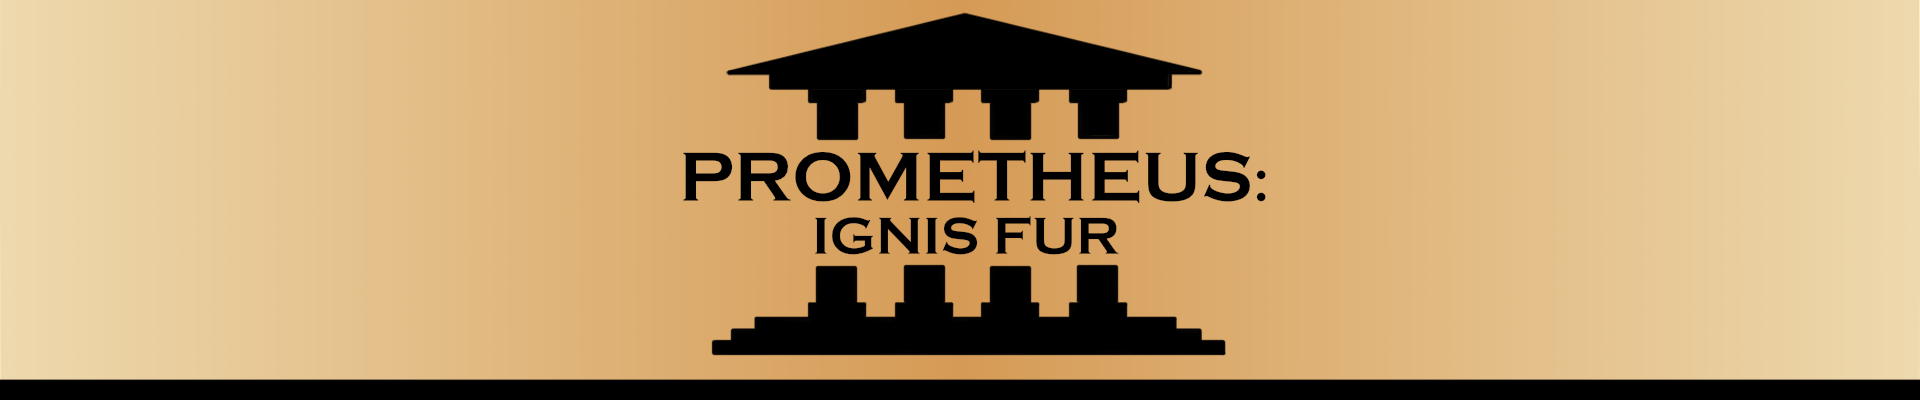 Prometheus: Ignis Fur